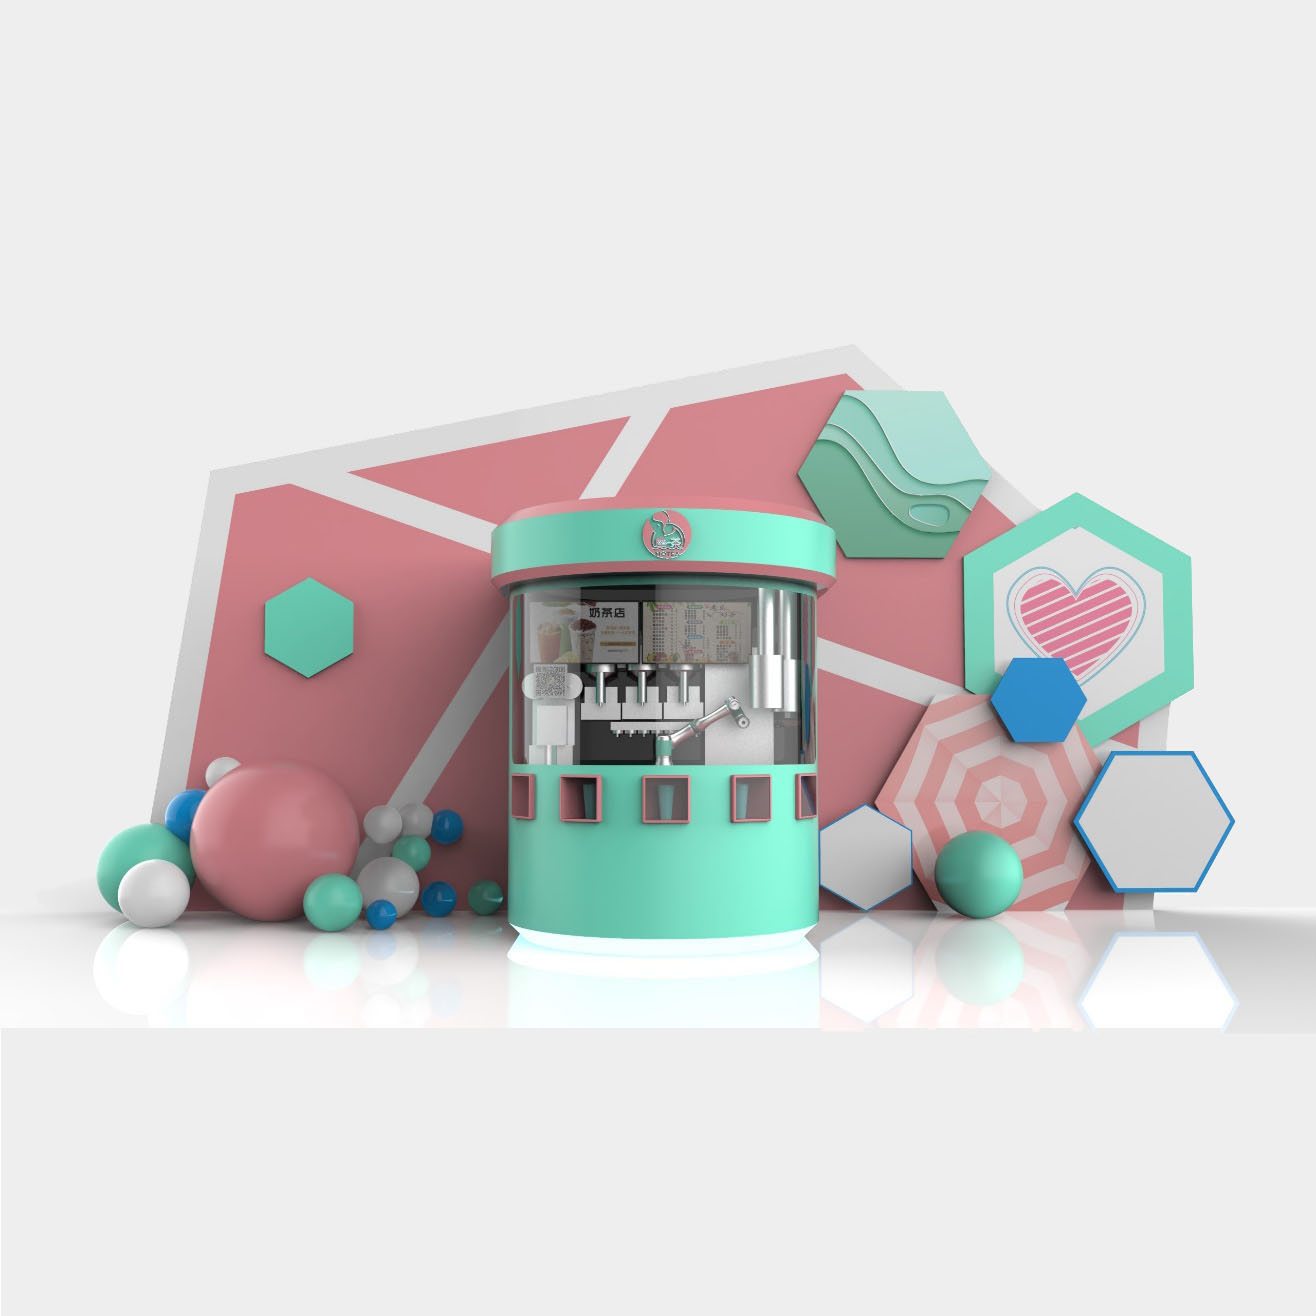 Jauns modes robotu piena tējas kiosks iekštelpu pielietojuma scenārijiem piedāvātais attēls